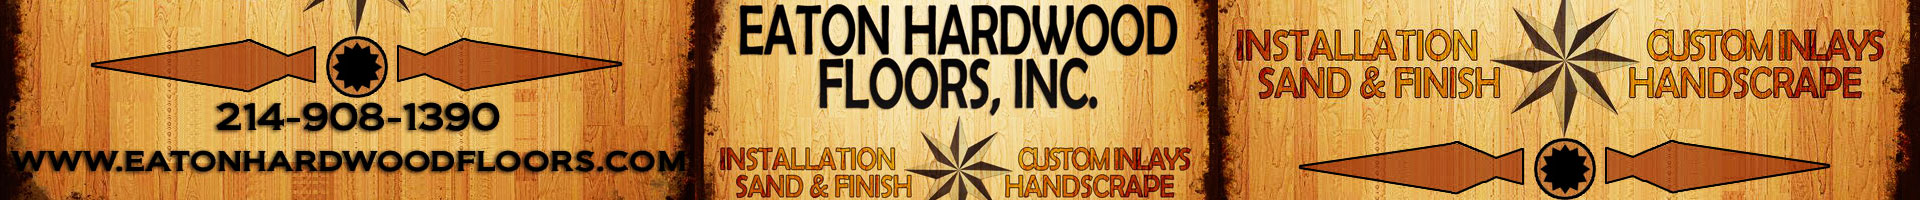 Eaton Hardwood Floors